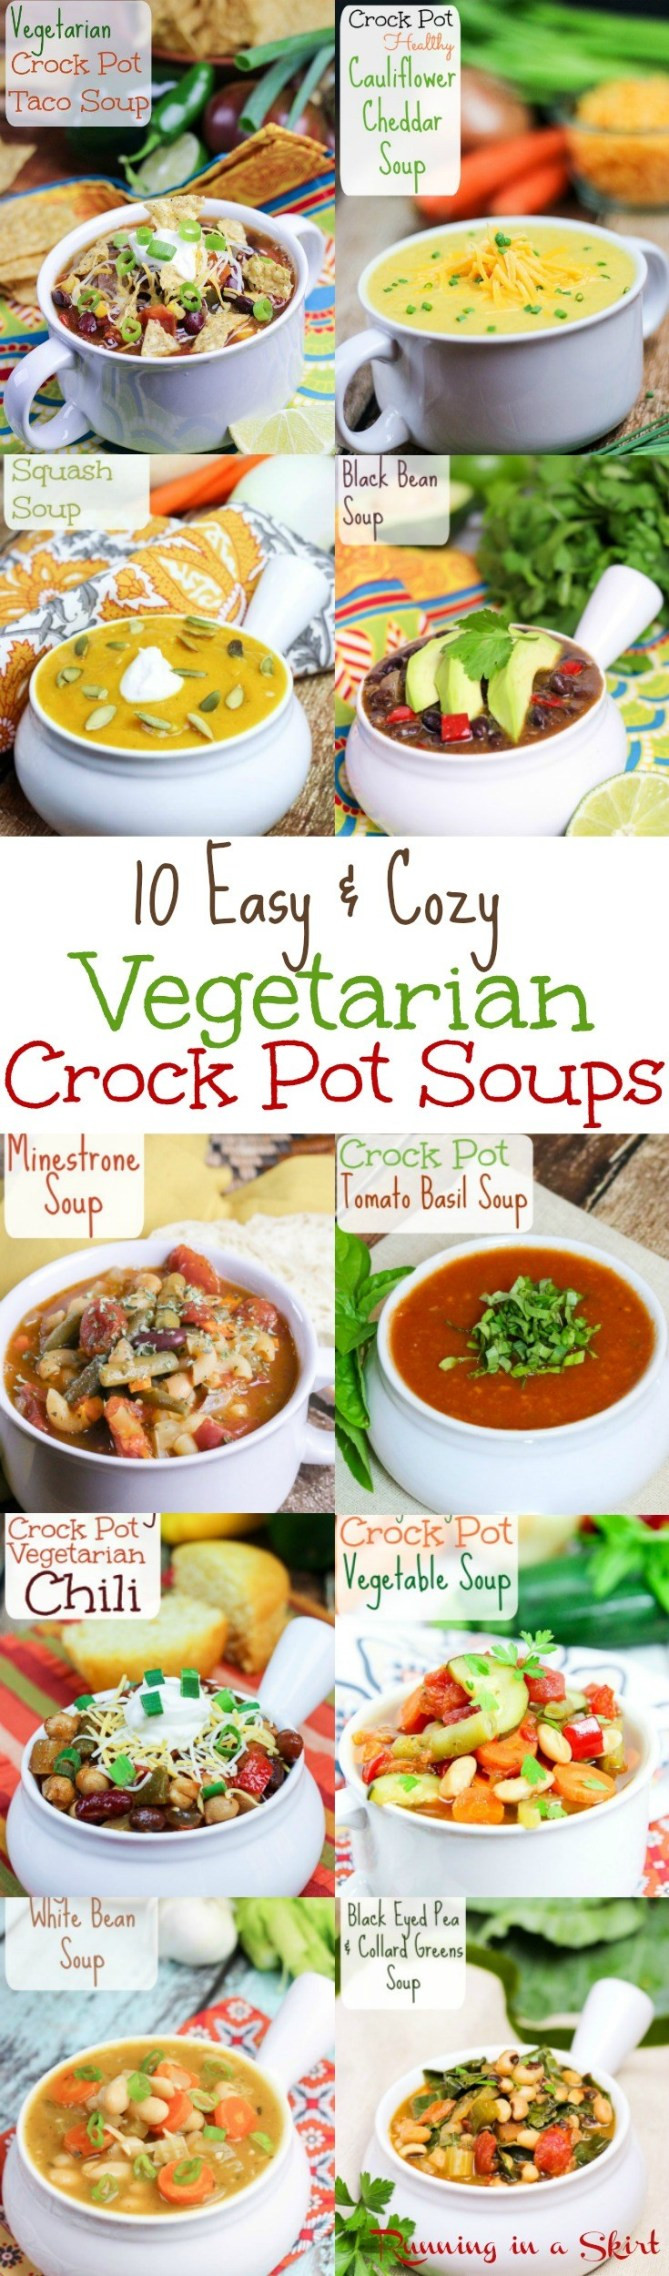 Vegetarian Crockpot Recipes
 10 Cozy Ve arian Crock Pot Soup recipes